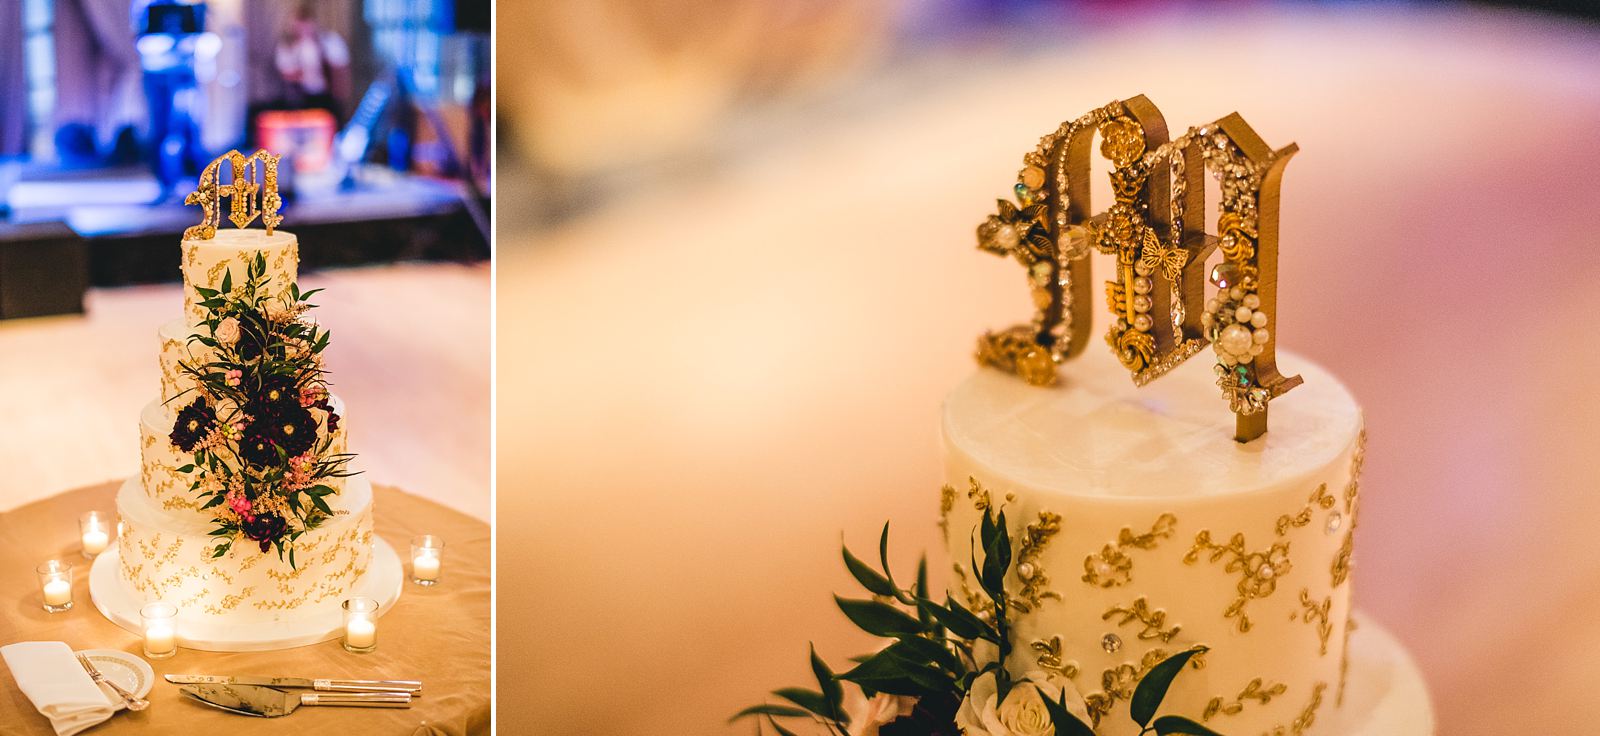 52 best cake photos at weddings - Chicago Drake Hotel Wedding // Corie + Jordan